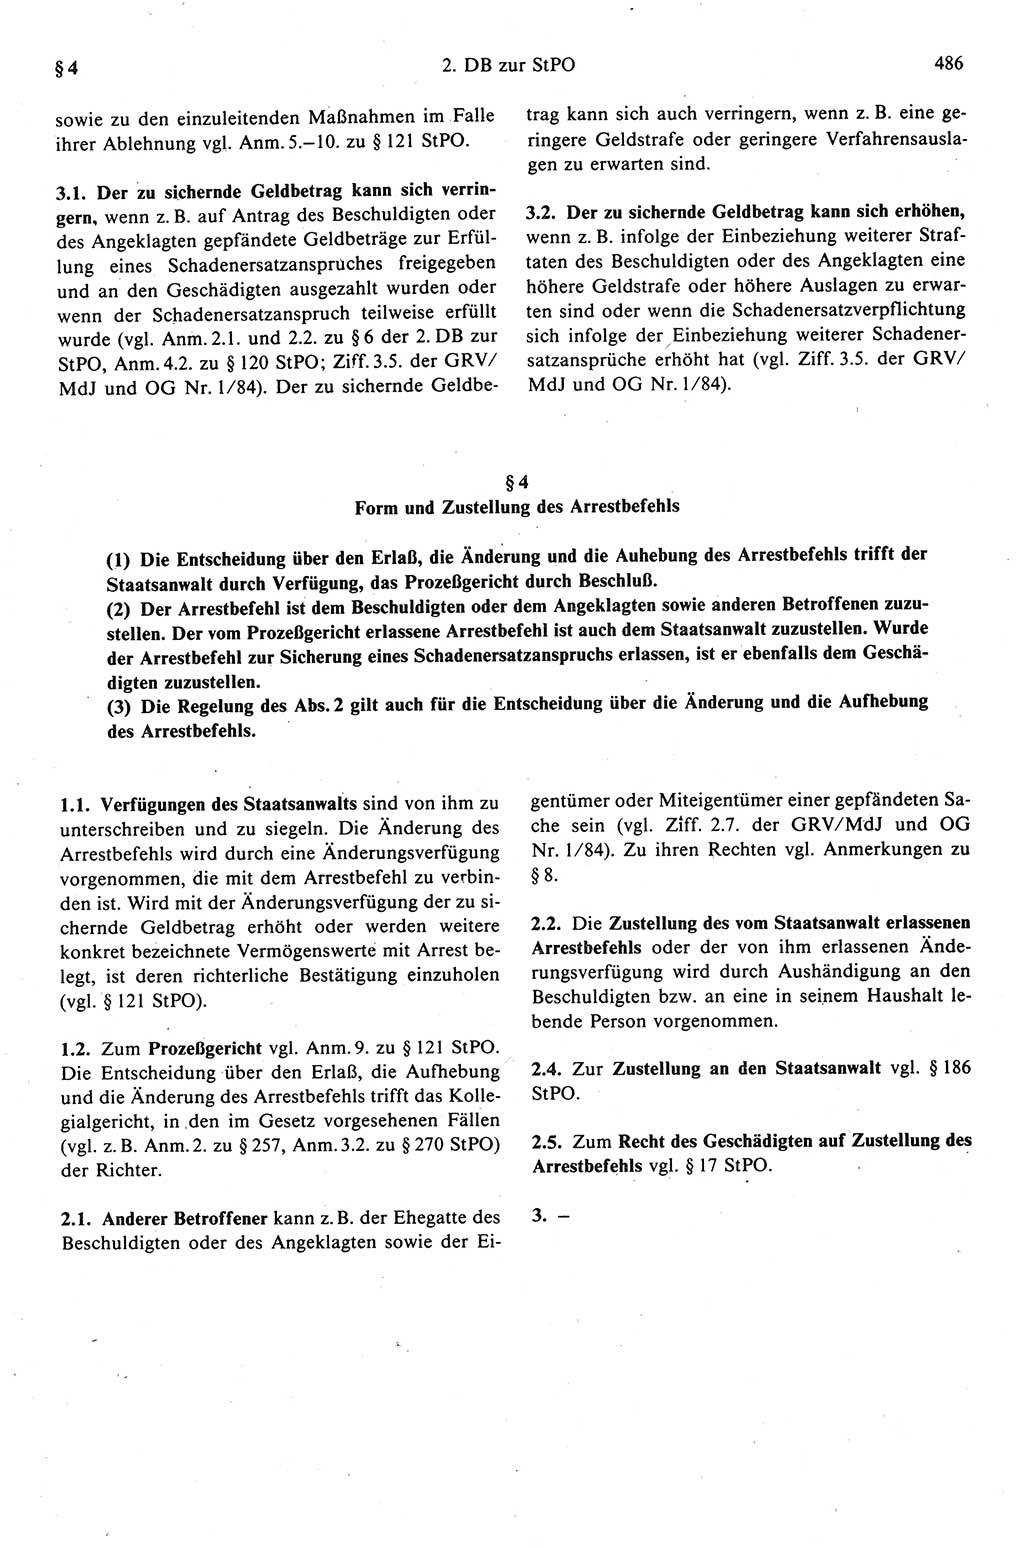 Strafprozeßrecht der DDR (Deutsche Demokratische Republik), Kommentar zur Strafprozeßordnung (StPO) 1989, Seite 486 (Strafprozeßr. DDR Komm. StPO 1989, S. 486)